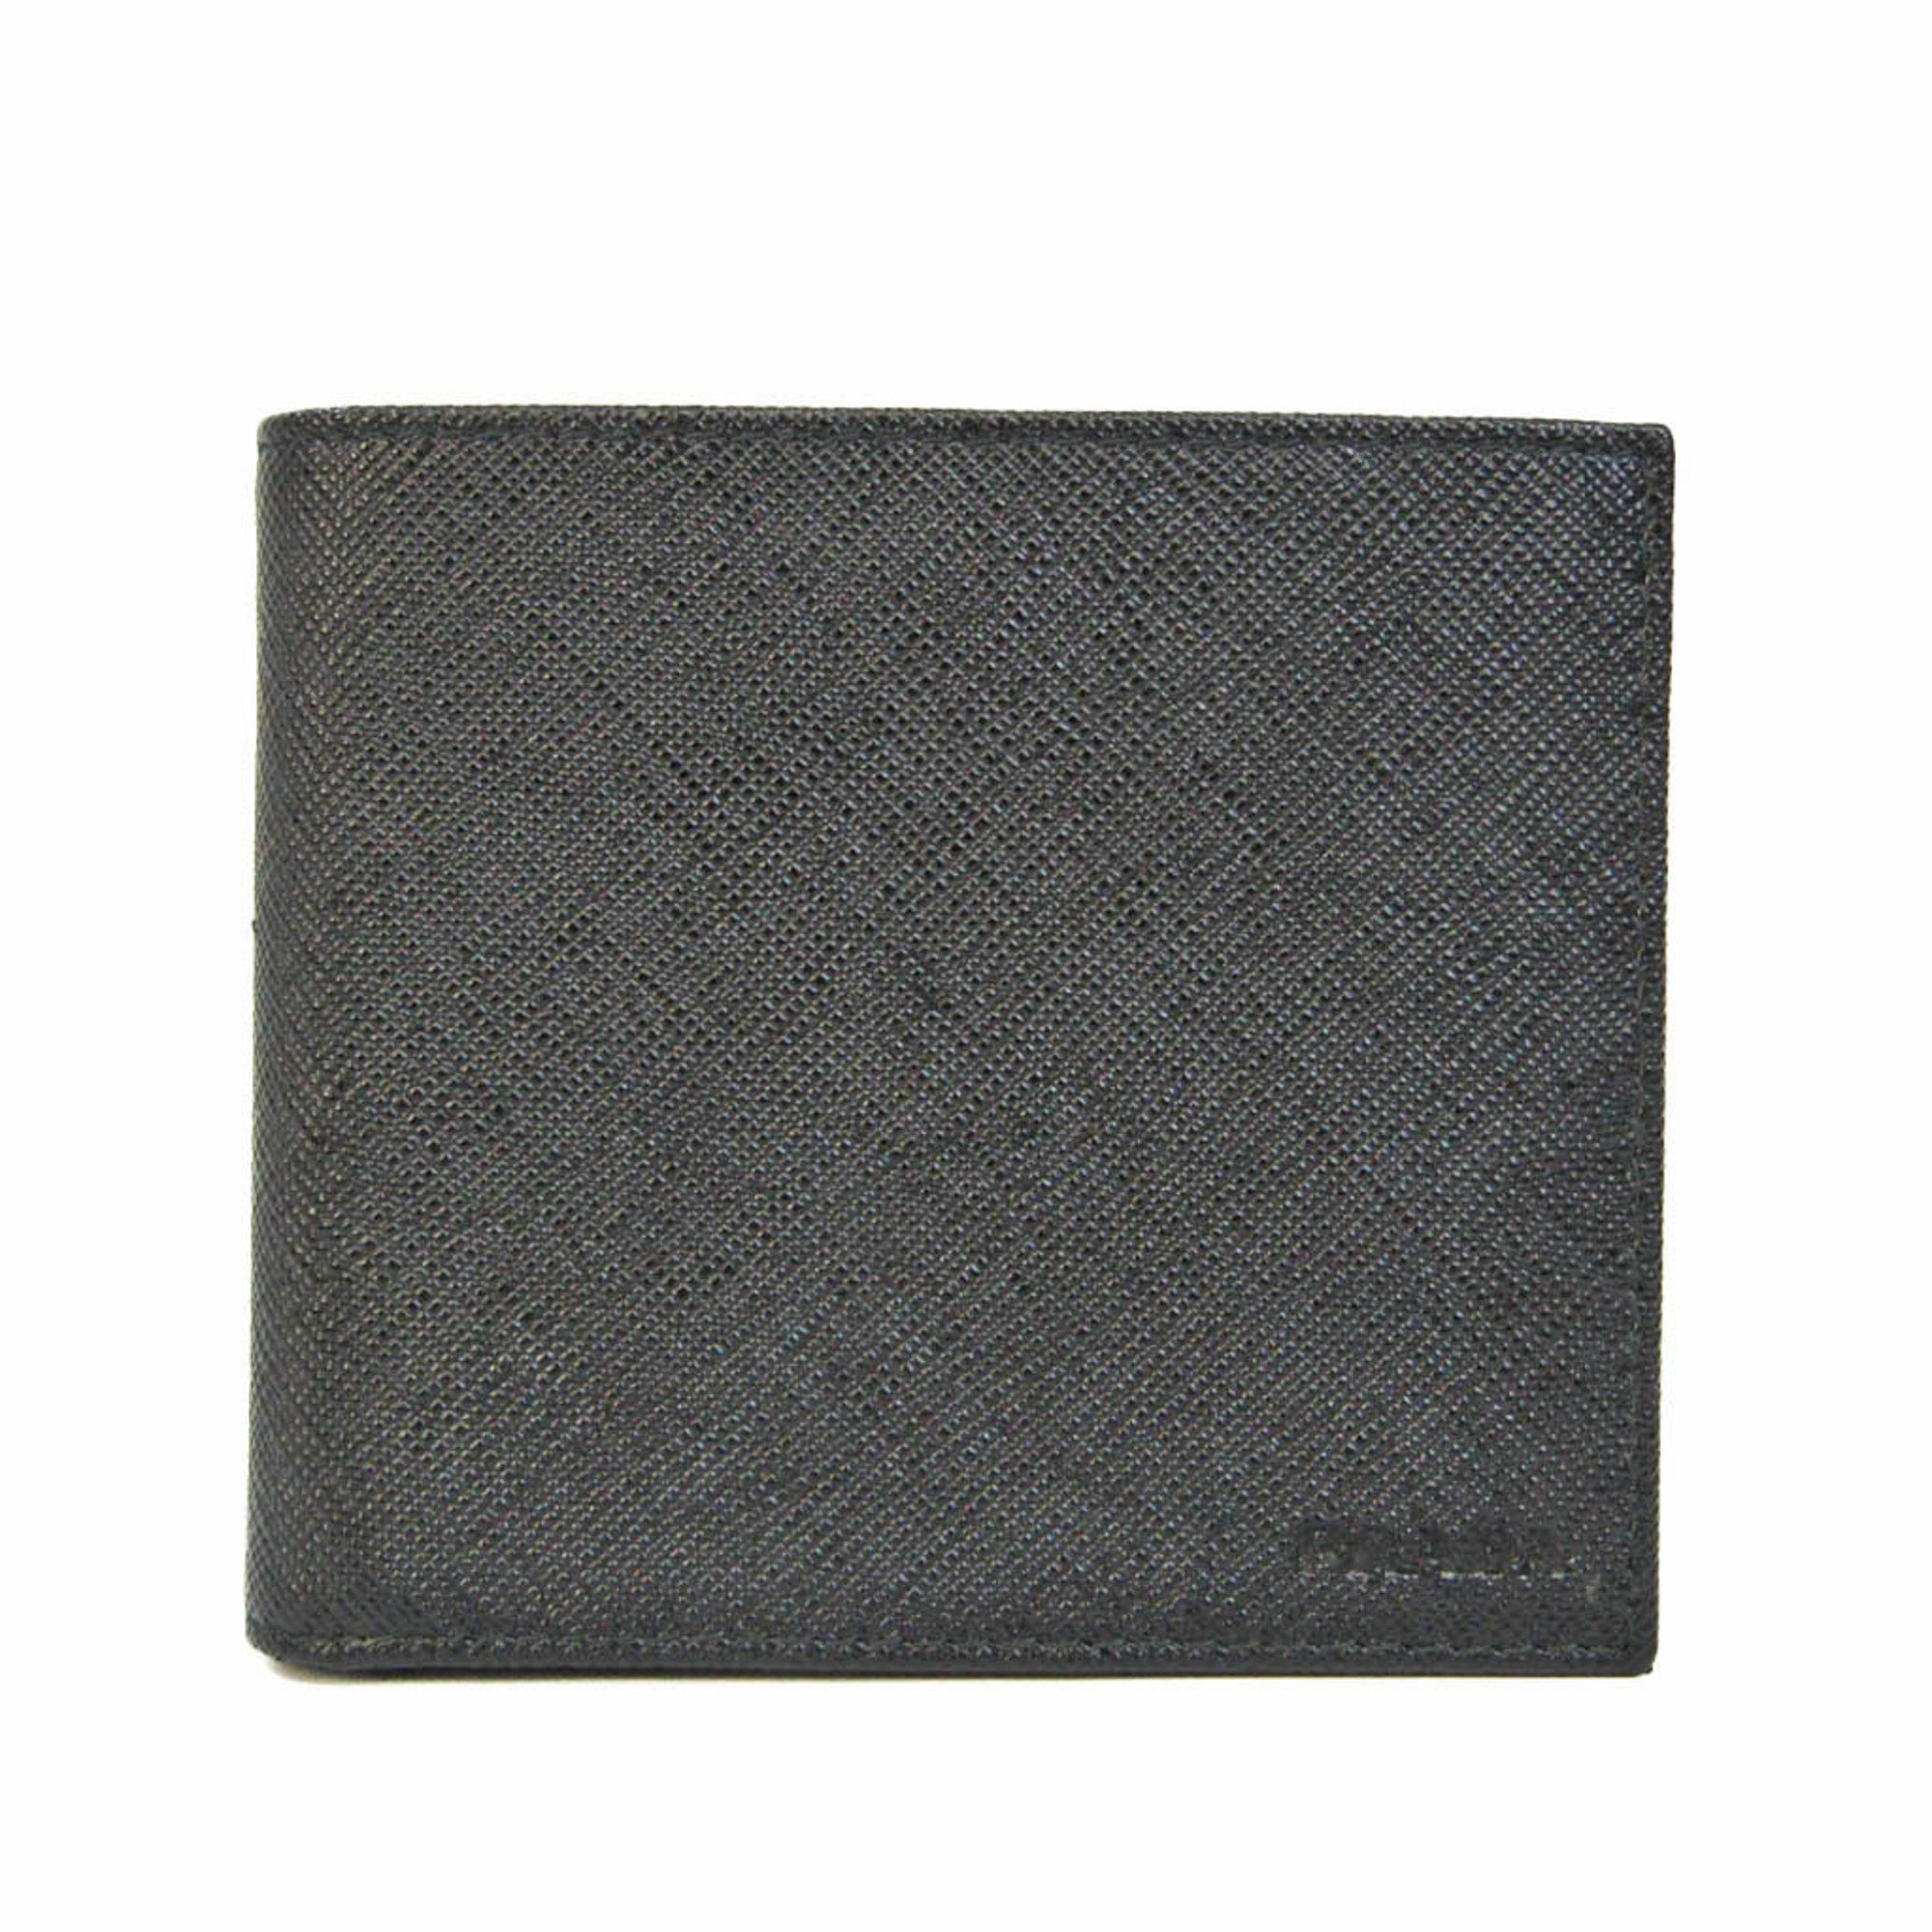 プラダ(Prada) サフィアーノ 2MO738 メンズ レザー 財布（二つ折り